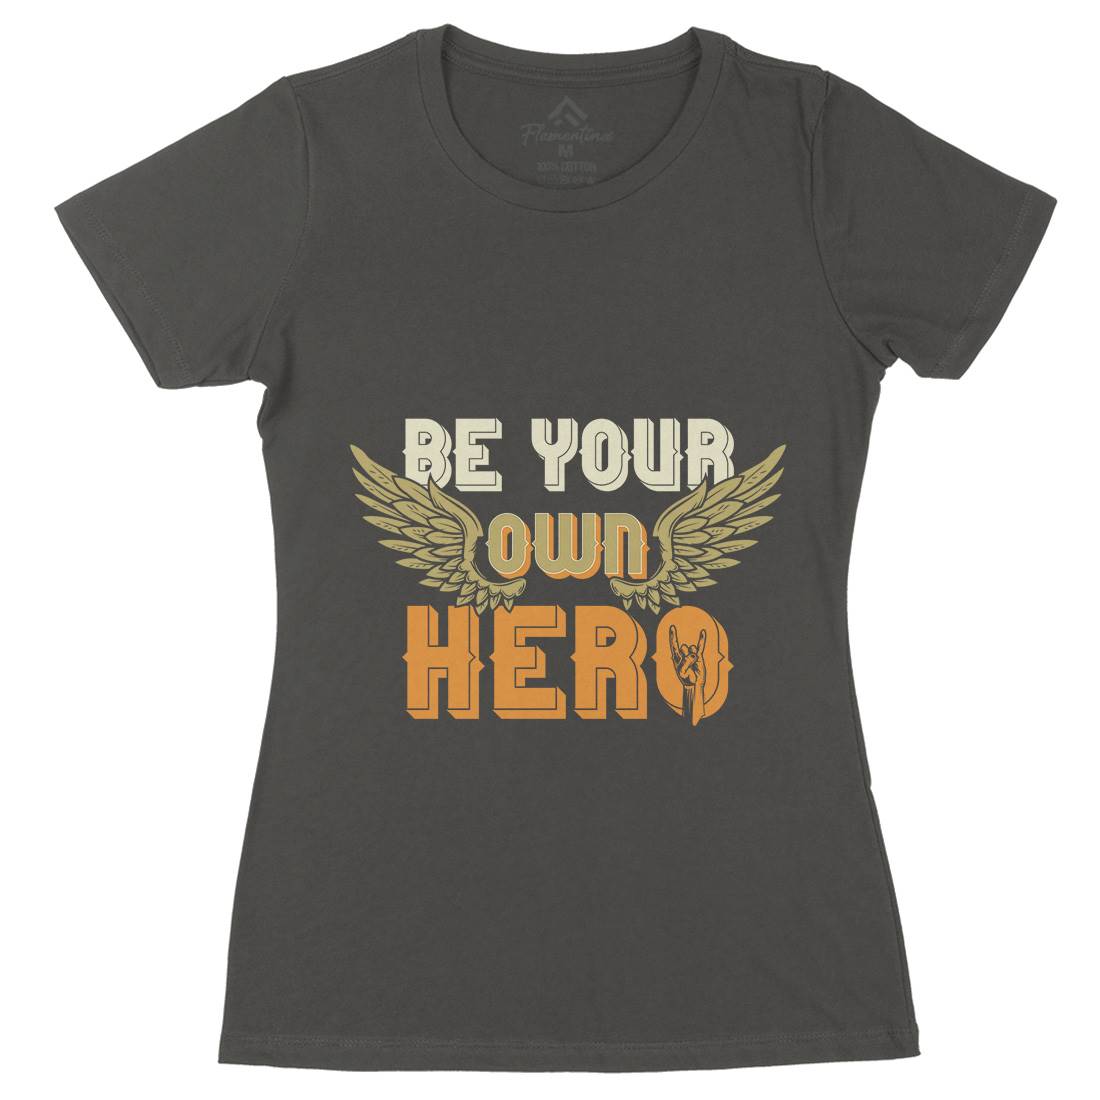 Be Your Own Hero Womens Organic Crew Neck T-Shirt Retro B327